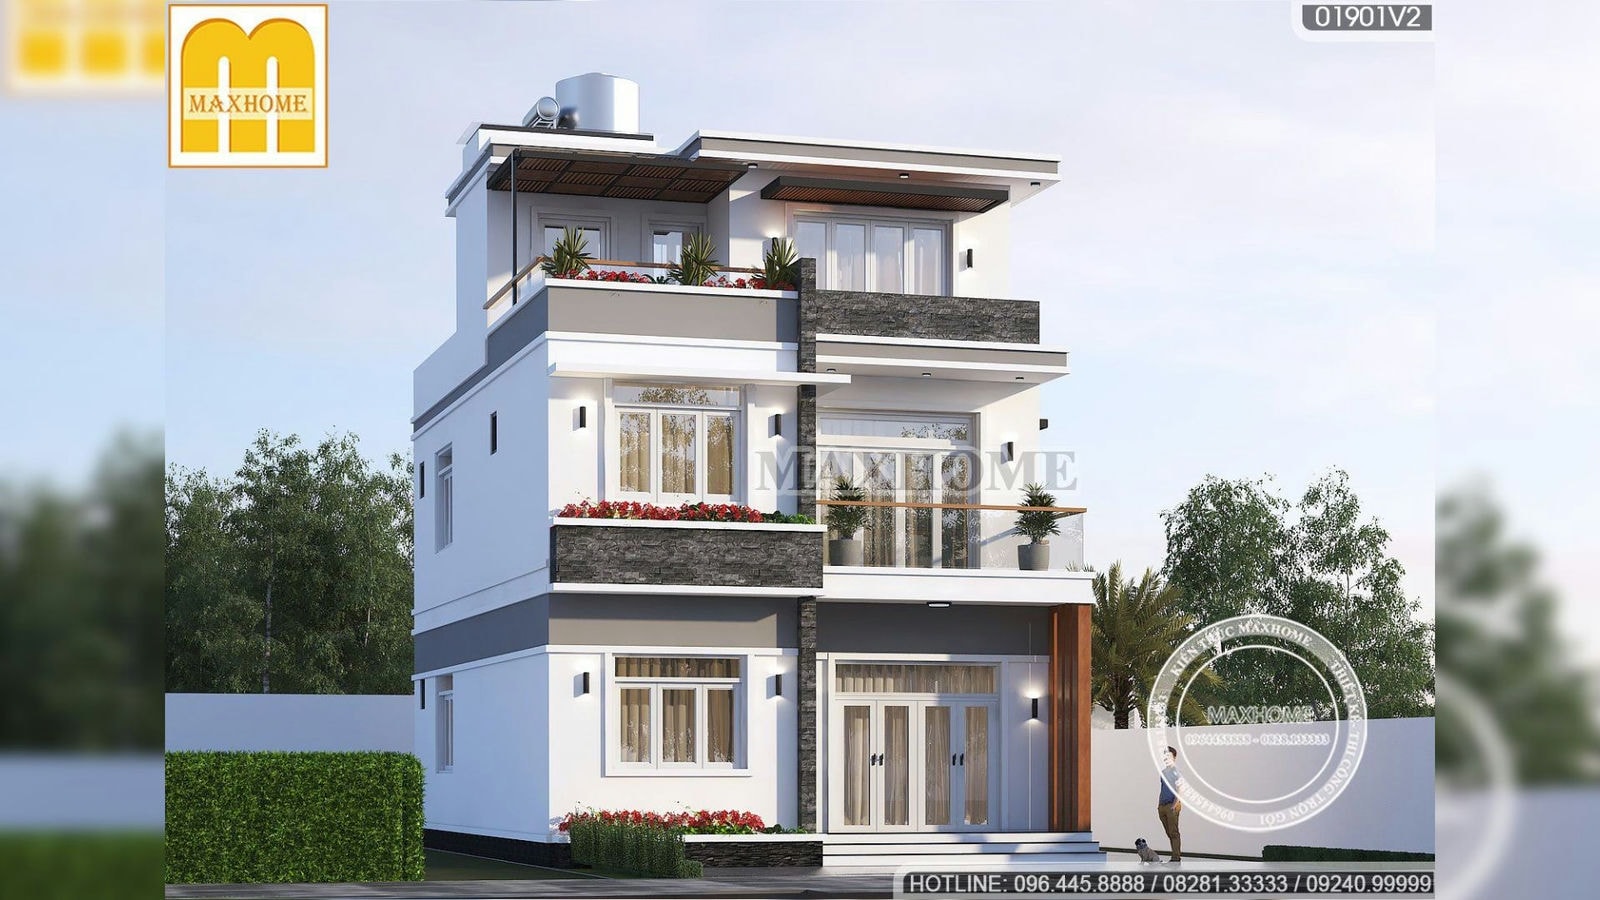 Thiết kế nhà hiện đại 3 tầng mặt tiền 9m HOT nhất Thanh Hoá I MH01758